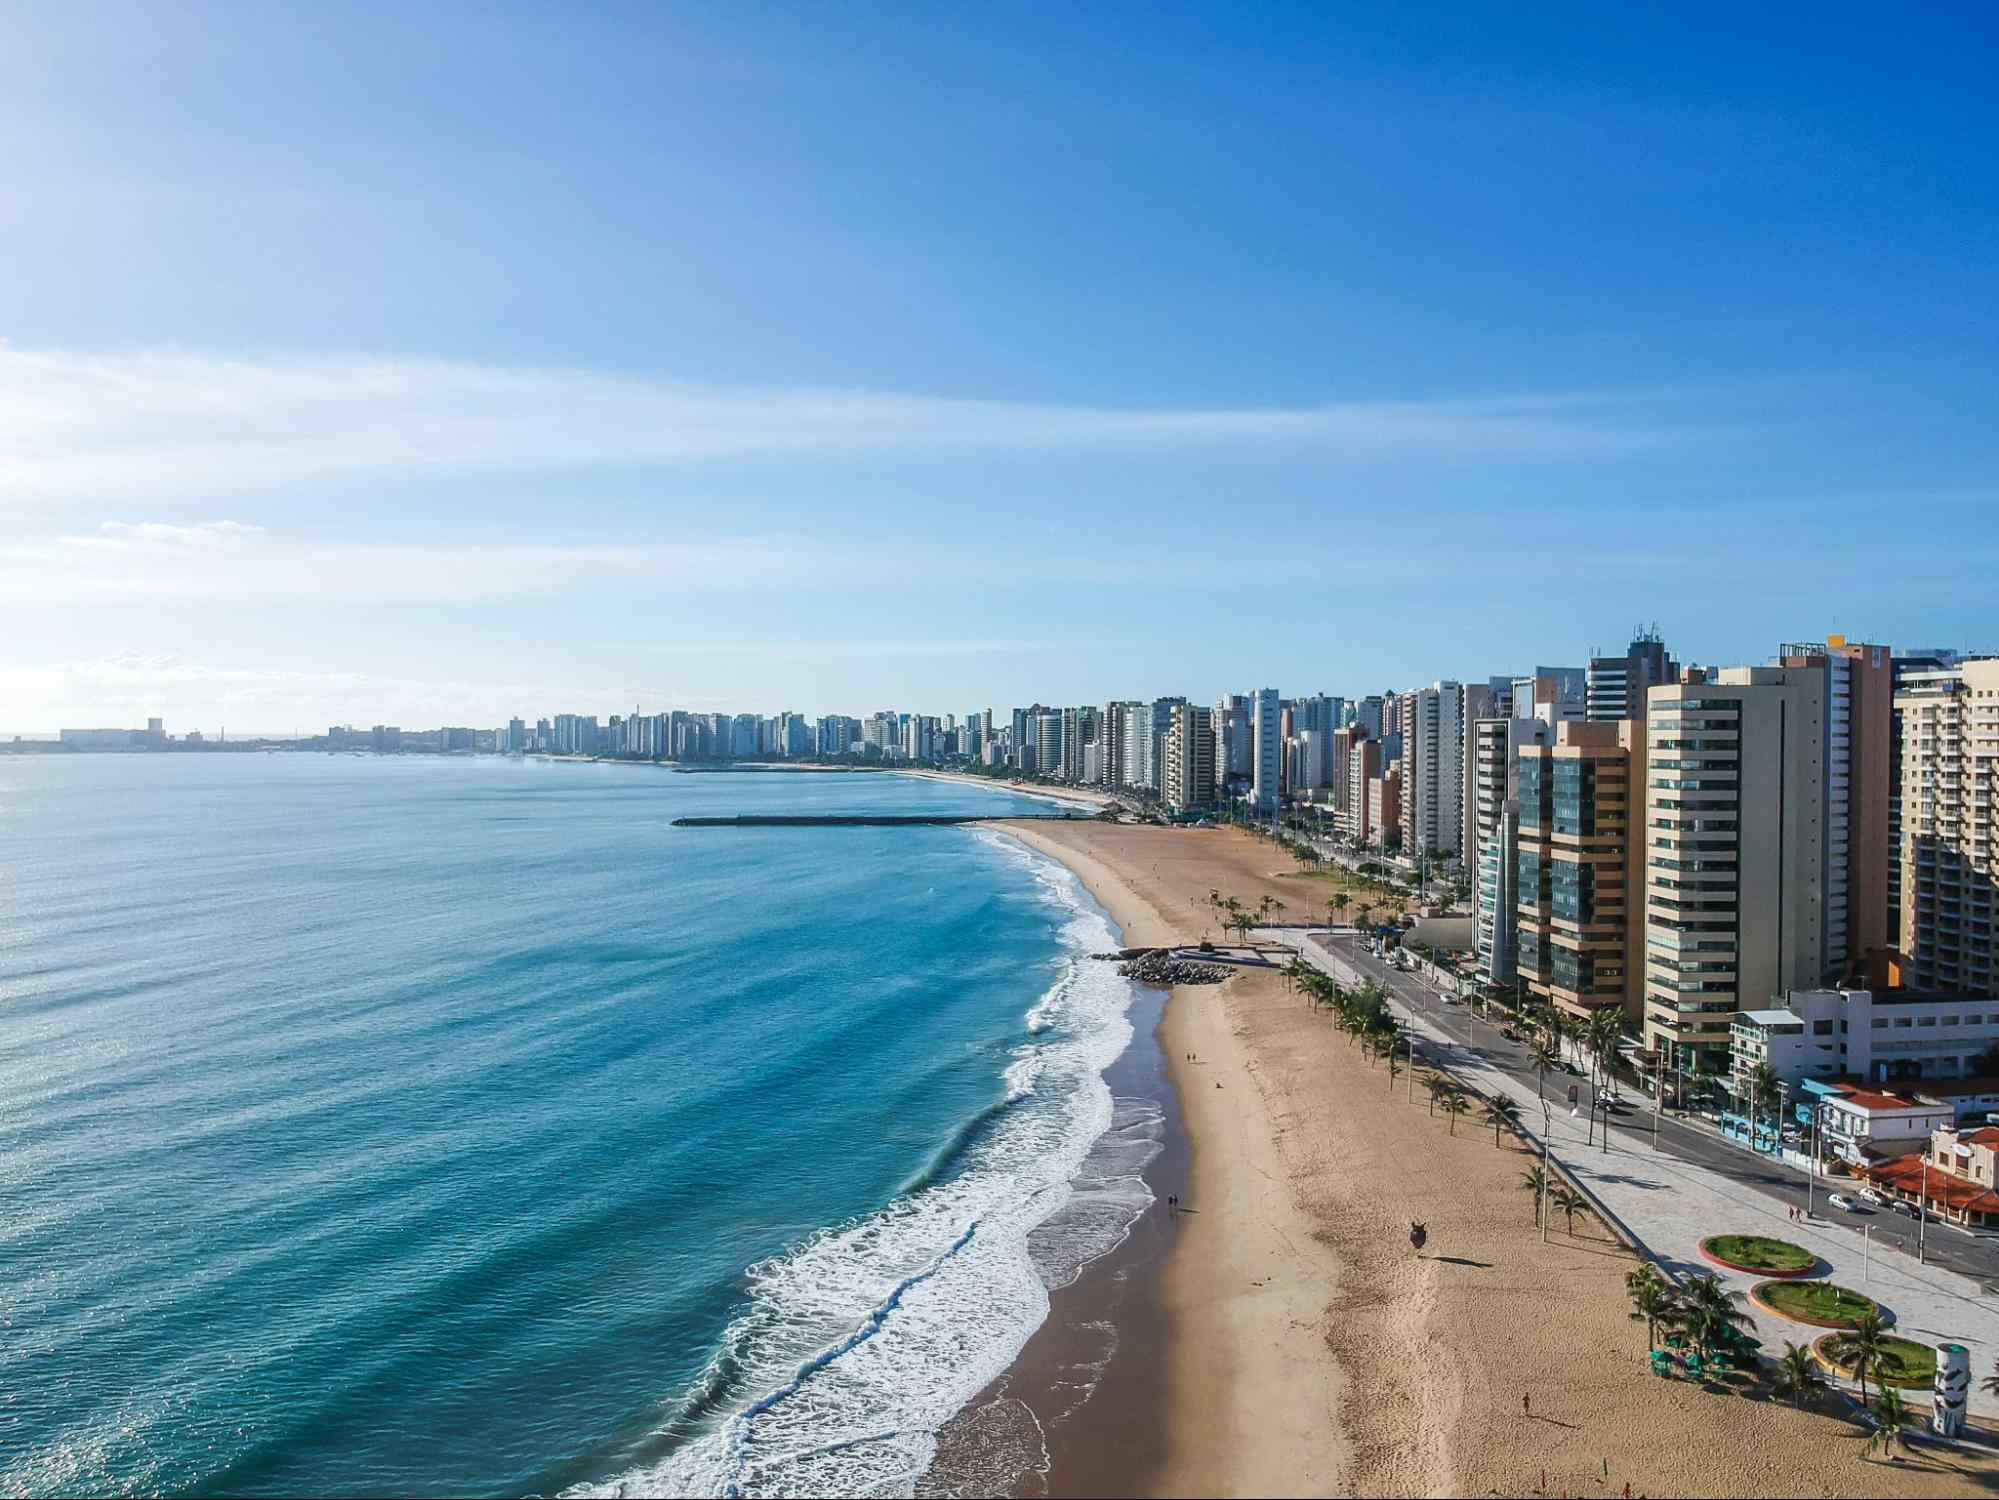 Vista aérea da Praia de Iracema, em Fortaleza. Praia urbana de mar azul e uma longa faixa de areia. A orla é delineada por prédios. Ao fundo, o céu azul aparece com poucas nuvens.